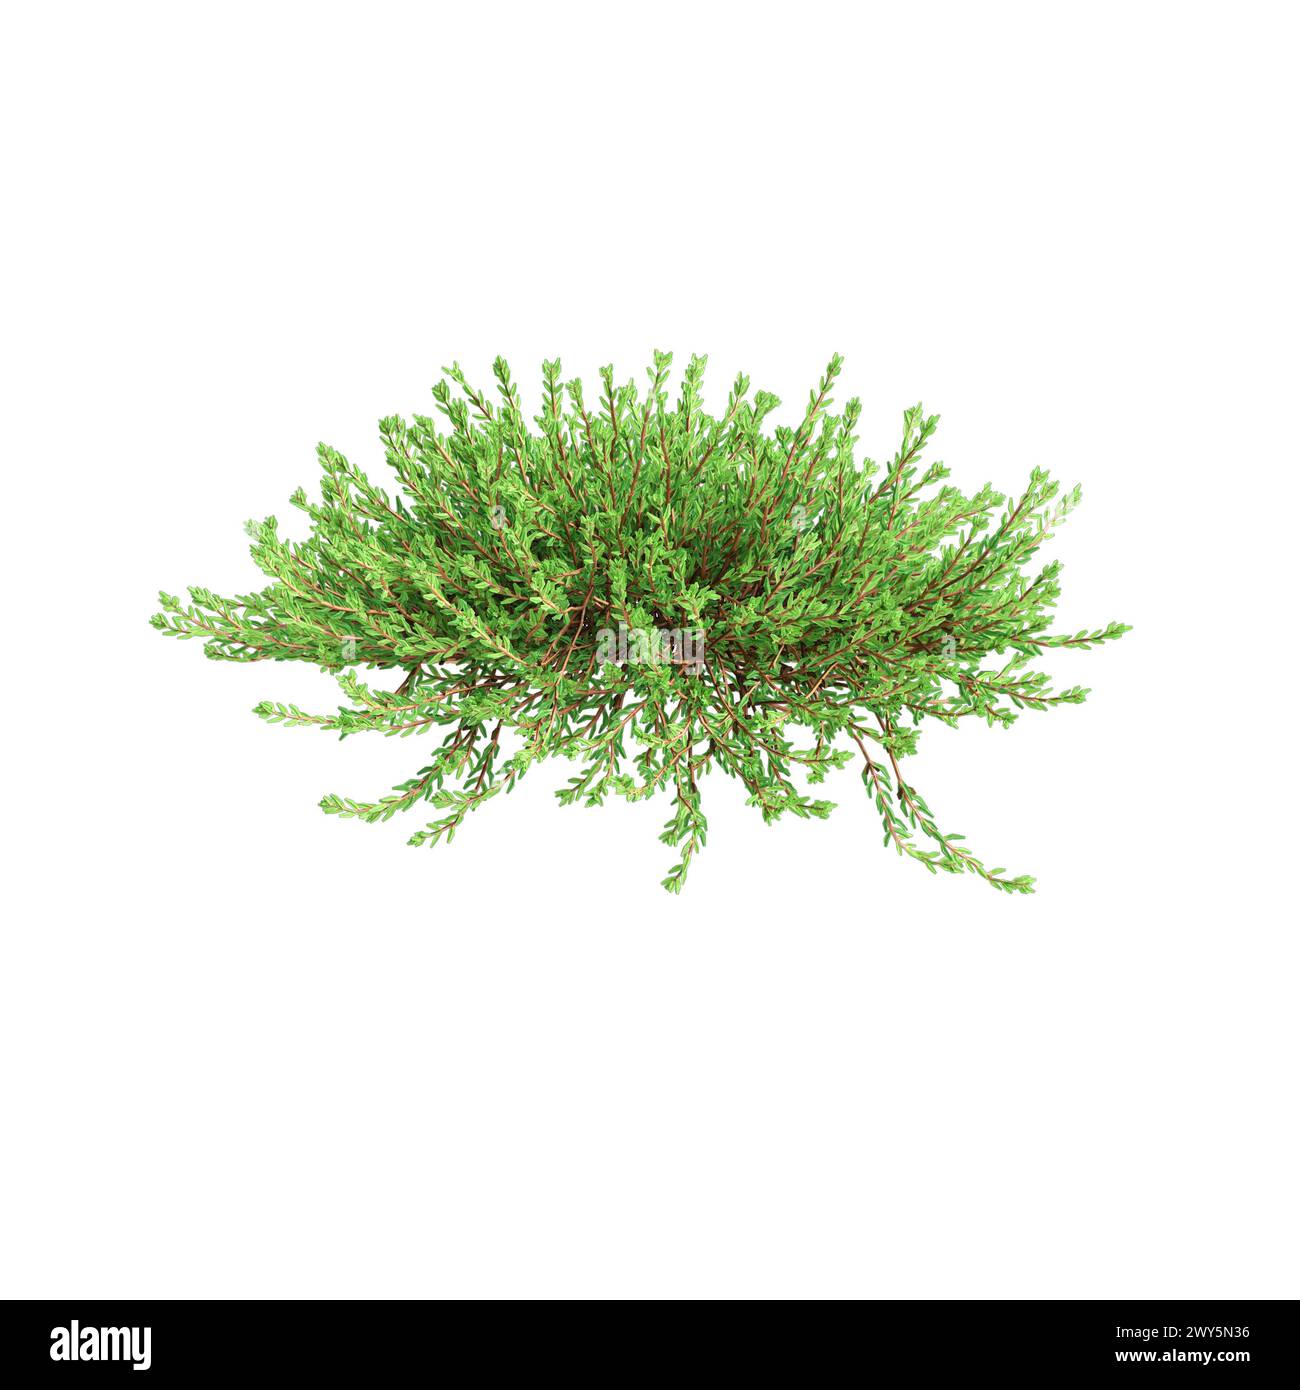 3d illustration of Empetrum nigrum hanging plant isolated on white background Stock Photo